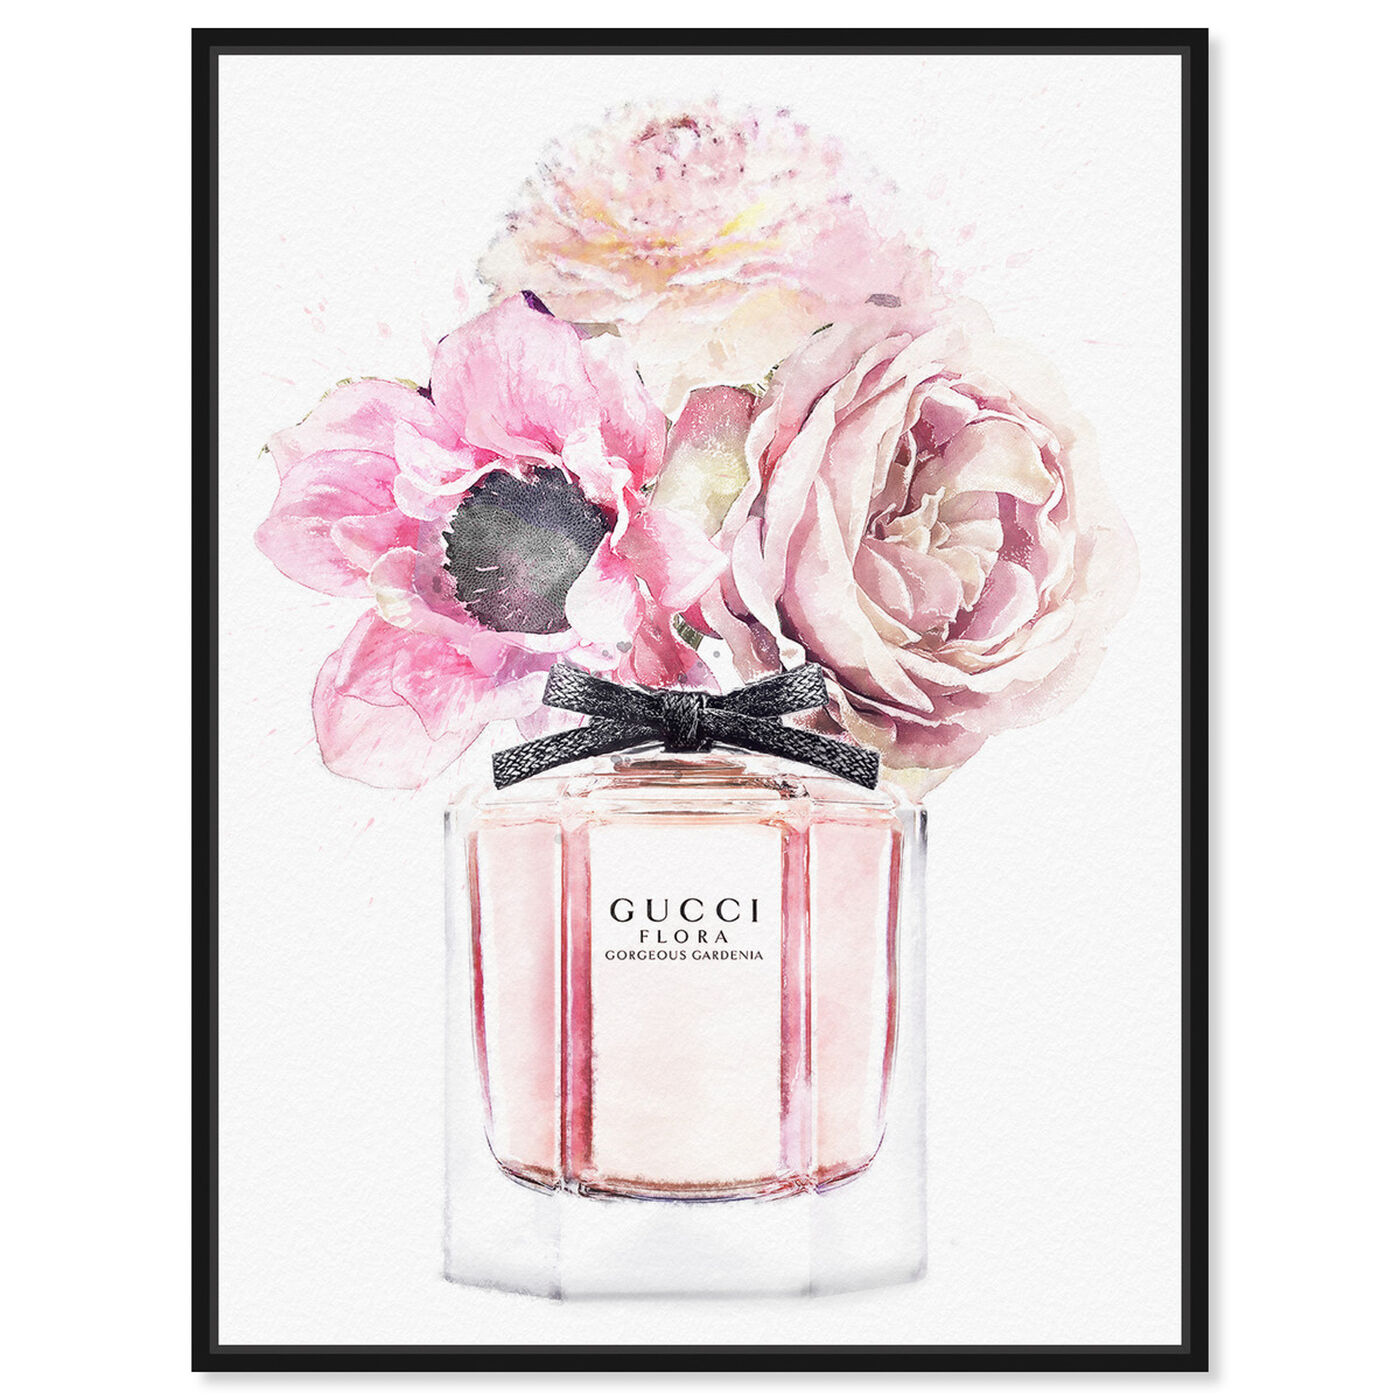 Gorgeous Gardenia Perfume: Luxury Wall Art